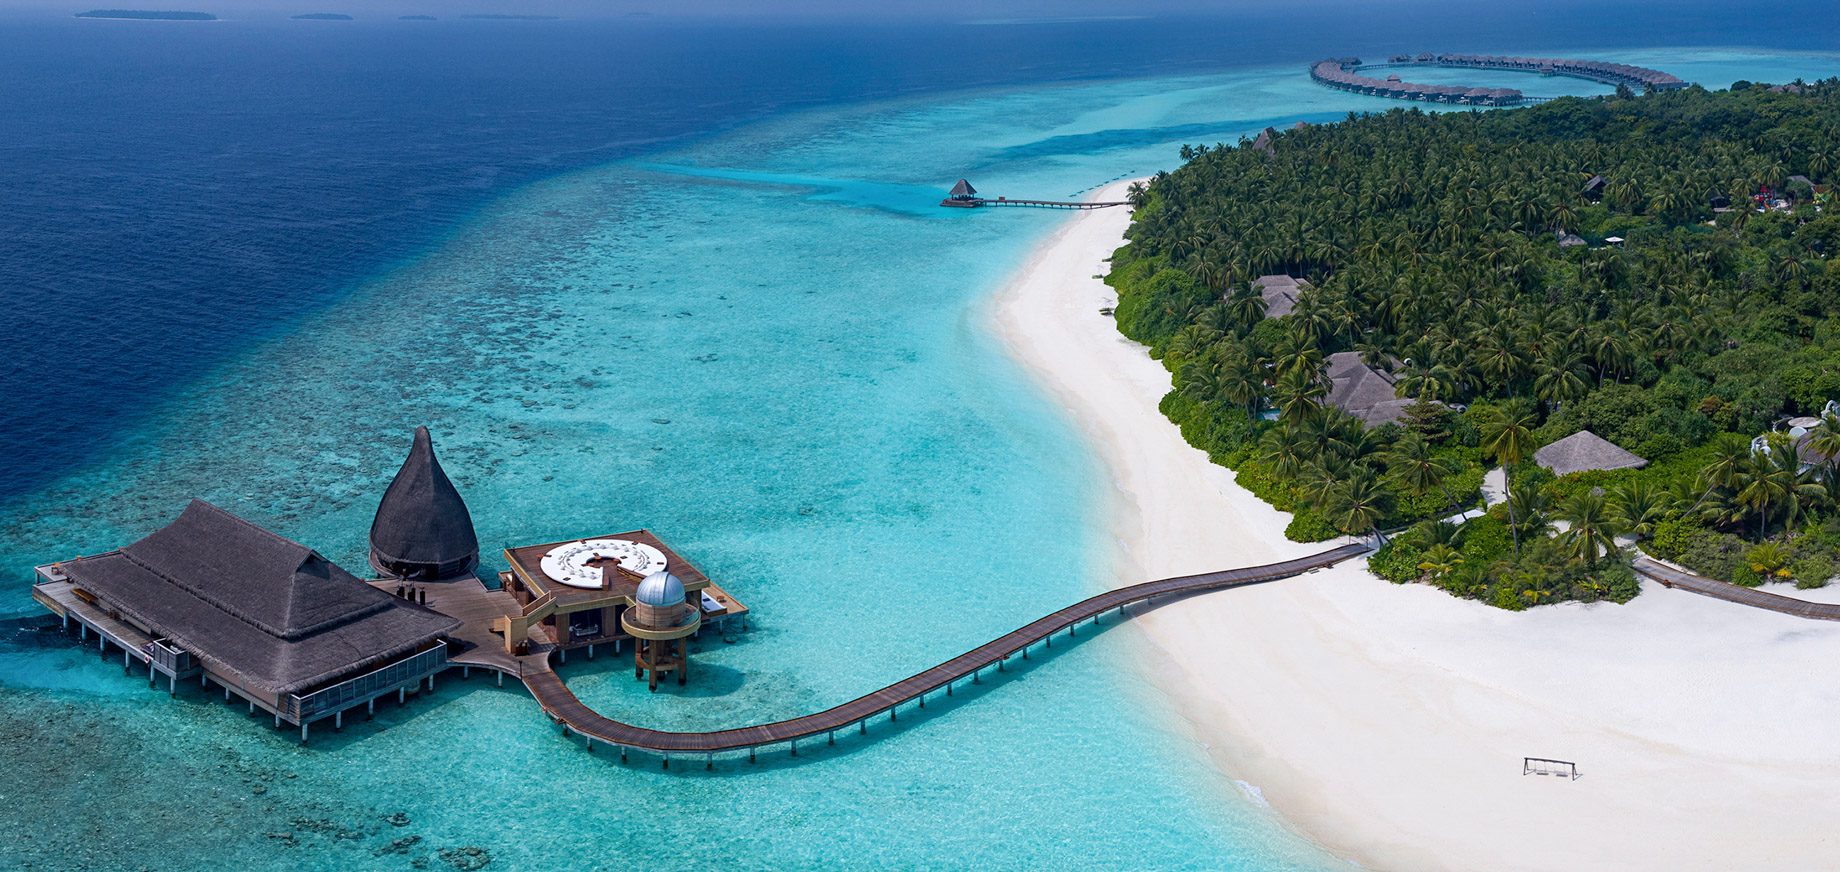 Anantara Kihavah Maldives Villas Resort – Baa Atoll, Maldives – Spa Jetty Aerial View